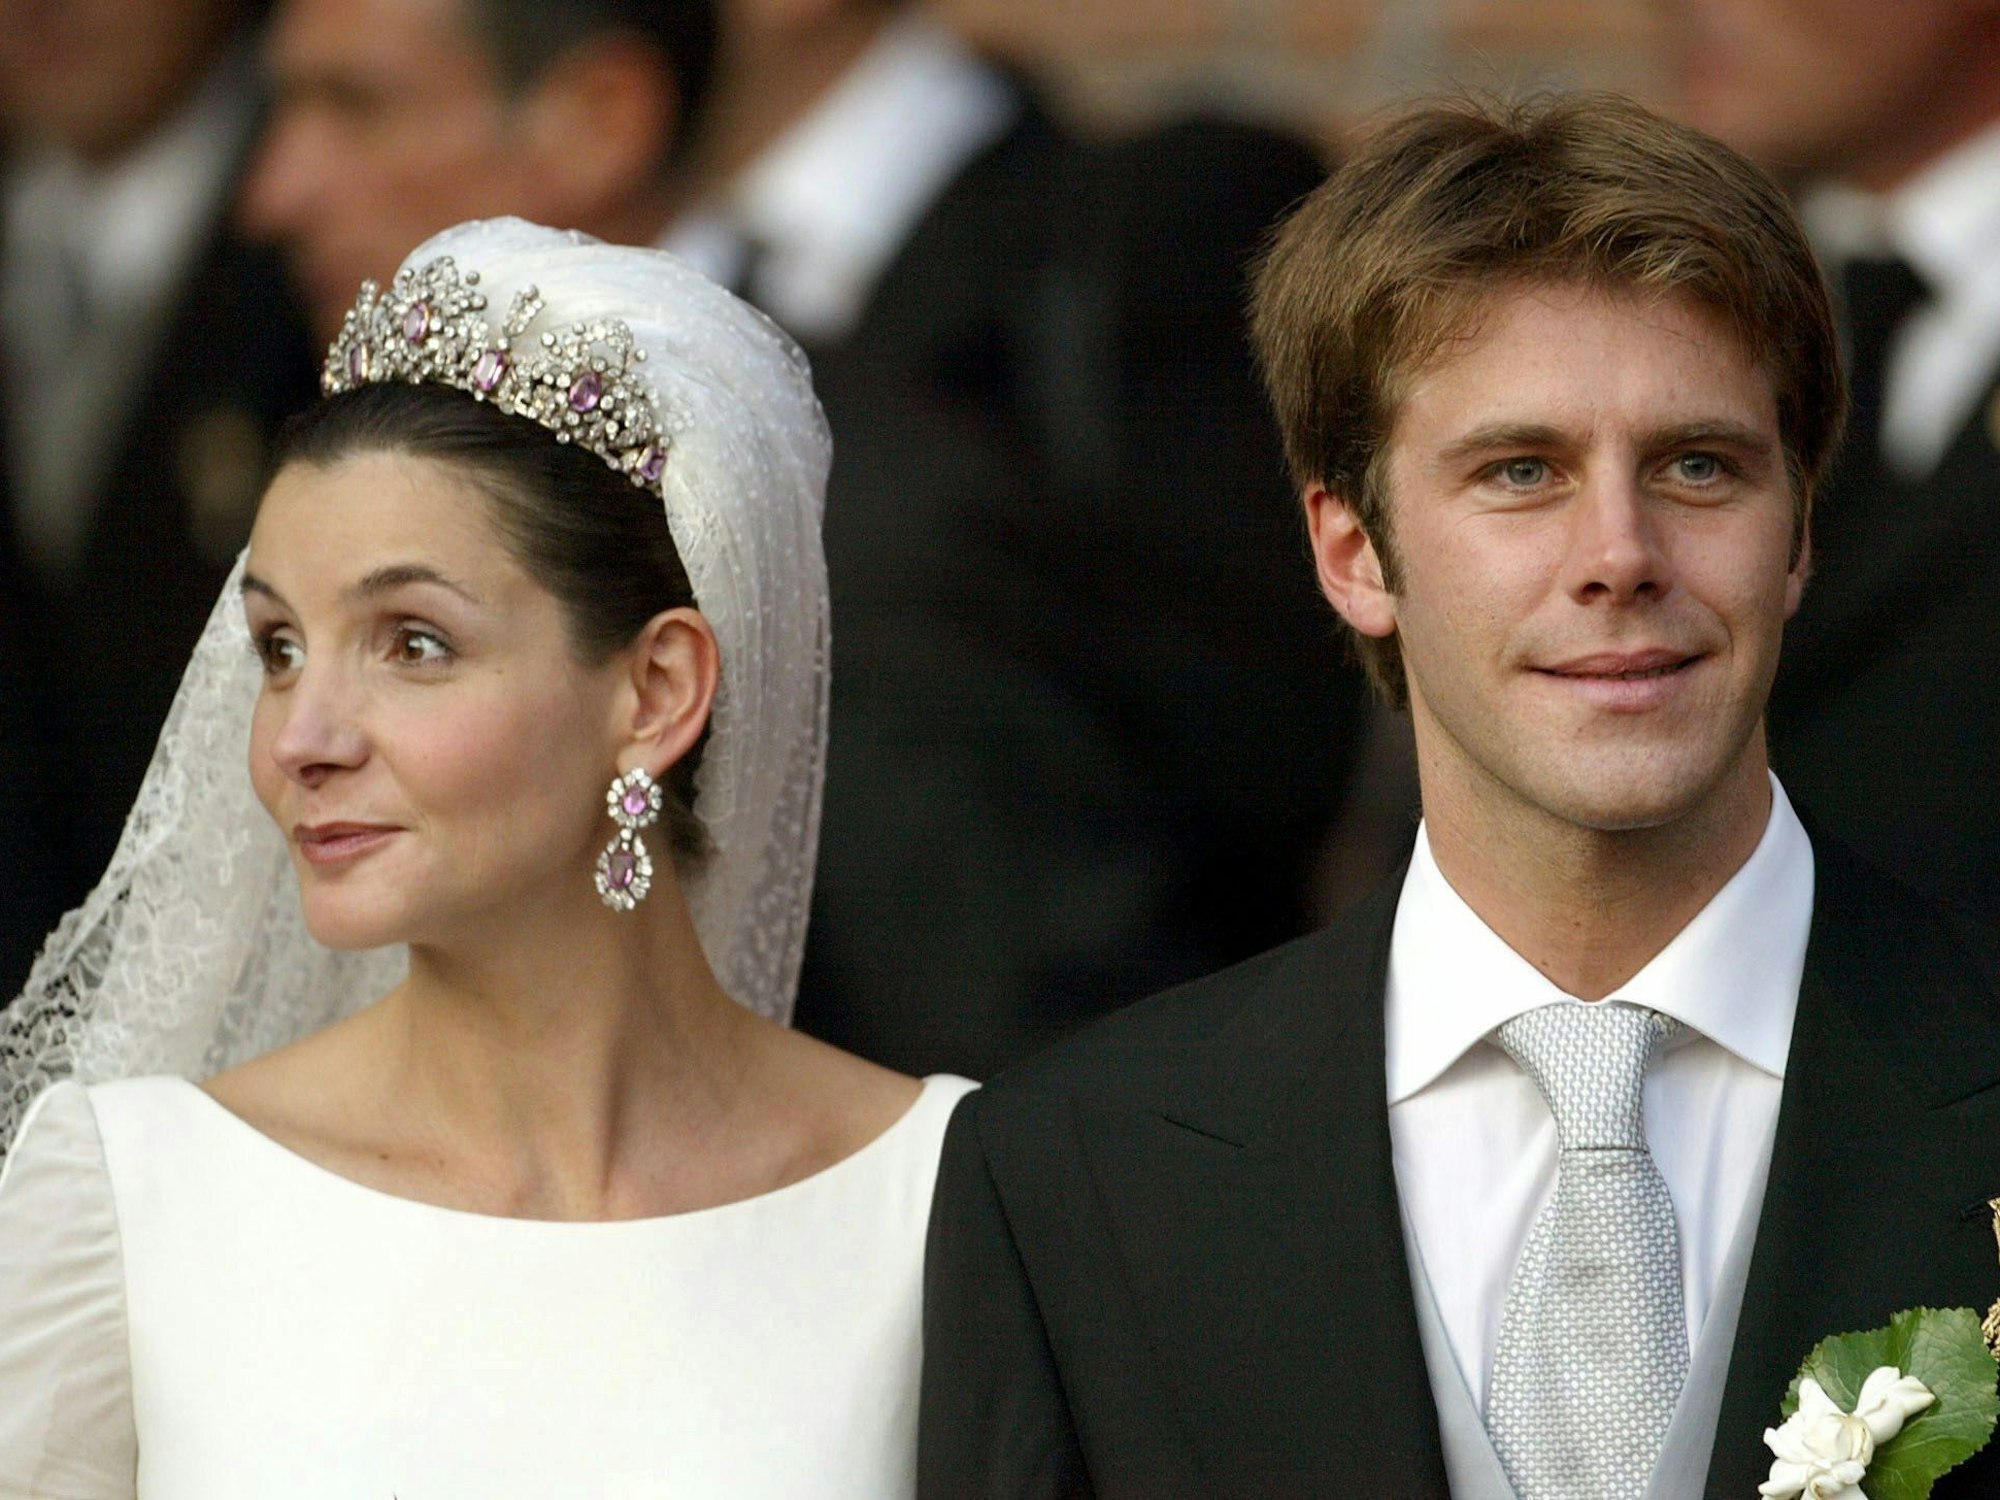 Sohn Emanuel Filiberto heiratete am 25. September 2009 in Rom die französische Schauspielerin Clotilde Courau